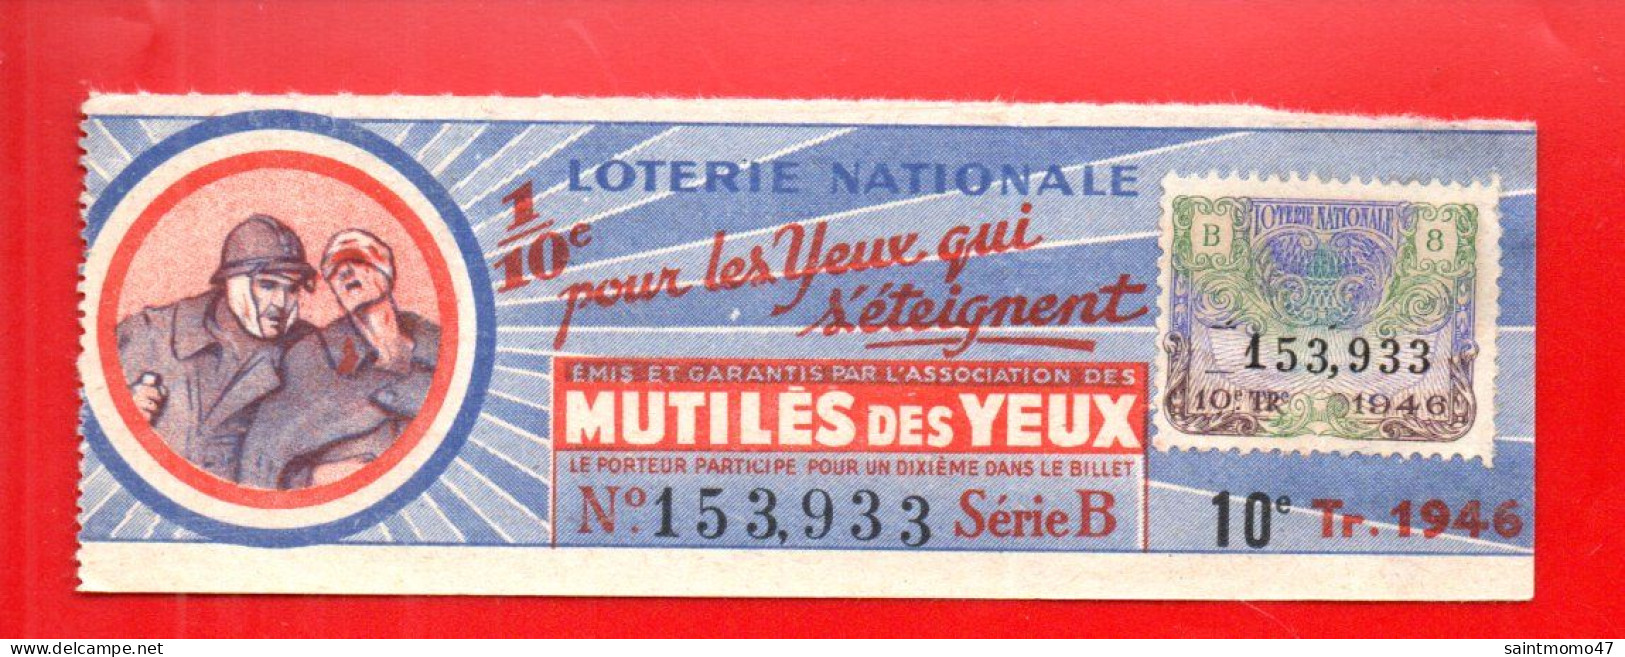 FRANCE . LOTERIE NATIONALE . " MUTILÉS DES YEUX " . 1946 - Ref. N°13017 - - Lotterielose